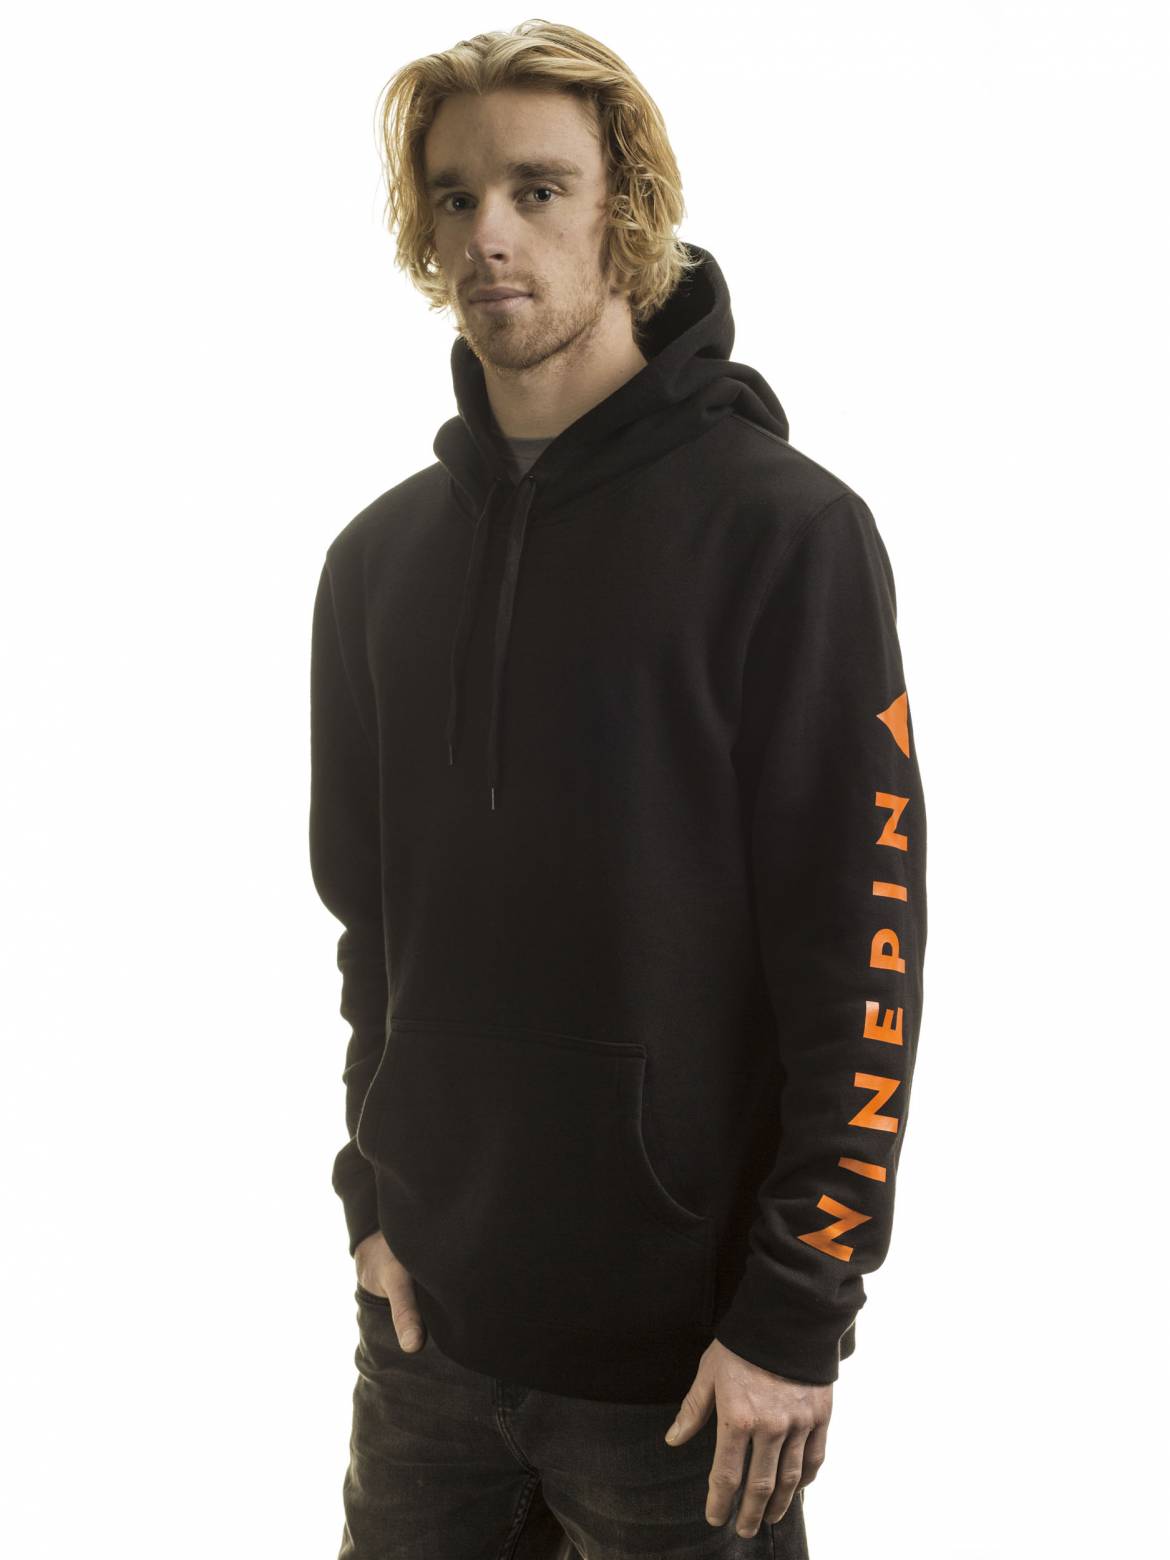 ninepin-hoodie-black-2500pix-04.jpg